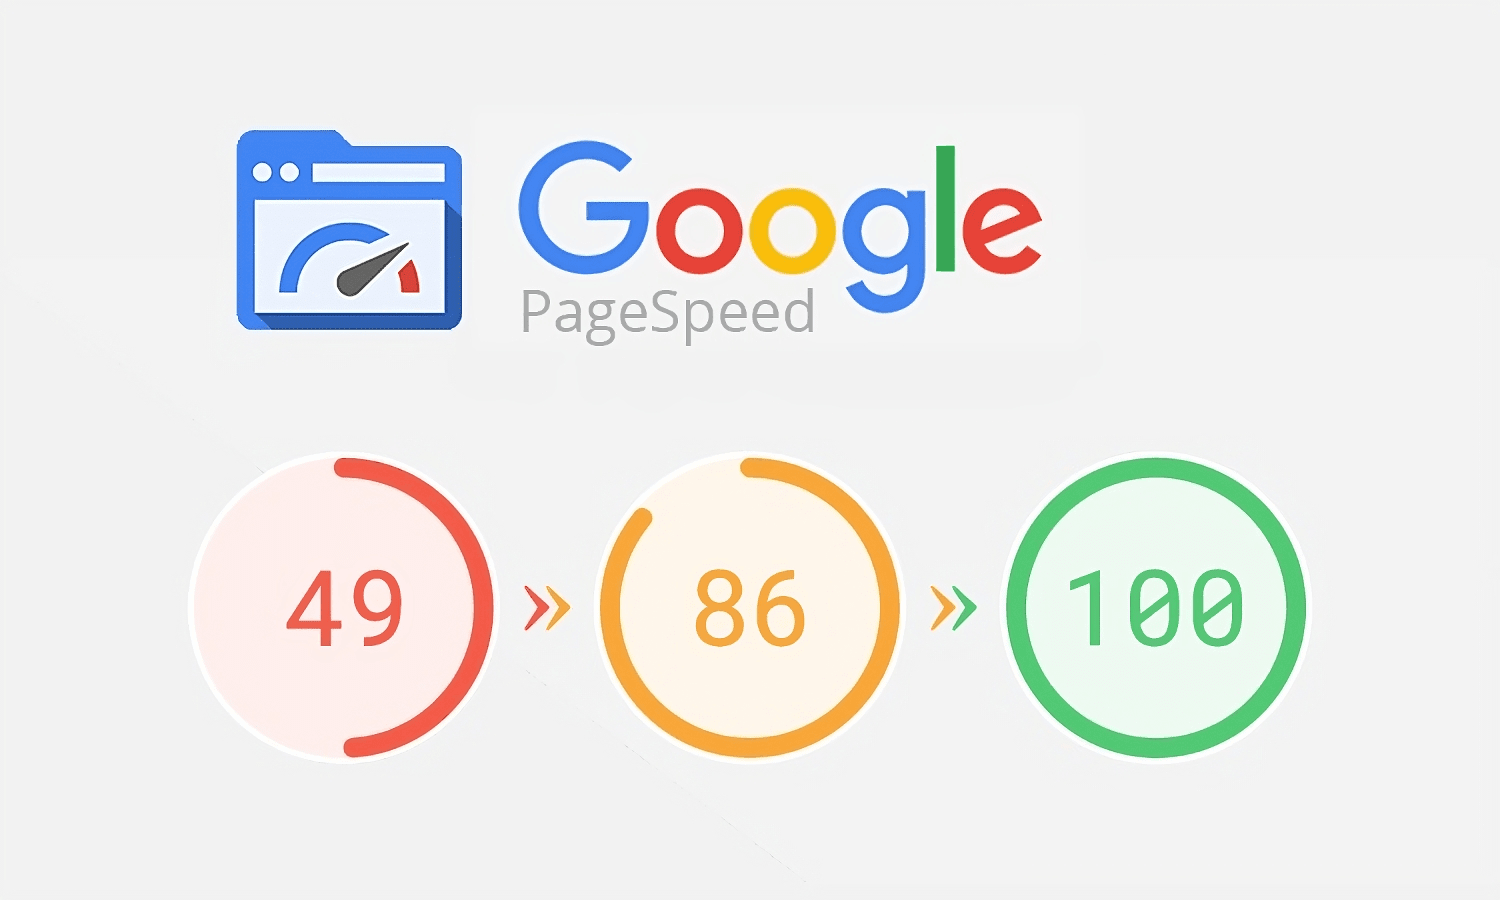 Apprenez à augmenter la vitesse des pages Google avec l'aide de dev-ittoz, une agence numérique. Améliorez les performances de votre site Web et l'expérience utilisateur grâce aux conseils d'experts d'une agence Web de confiance.